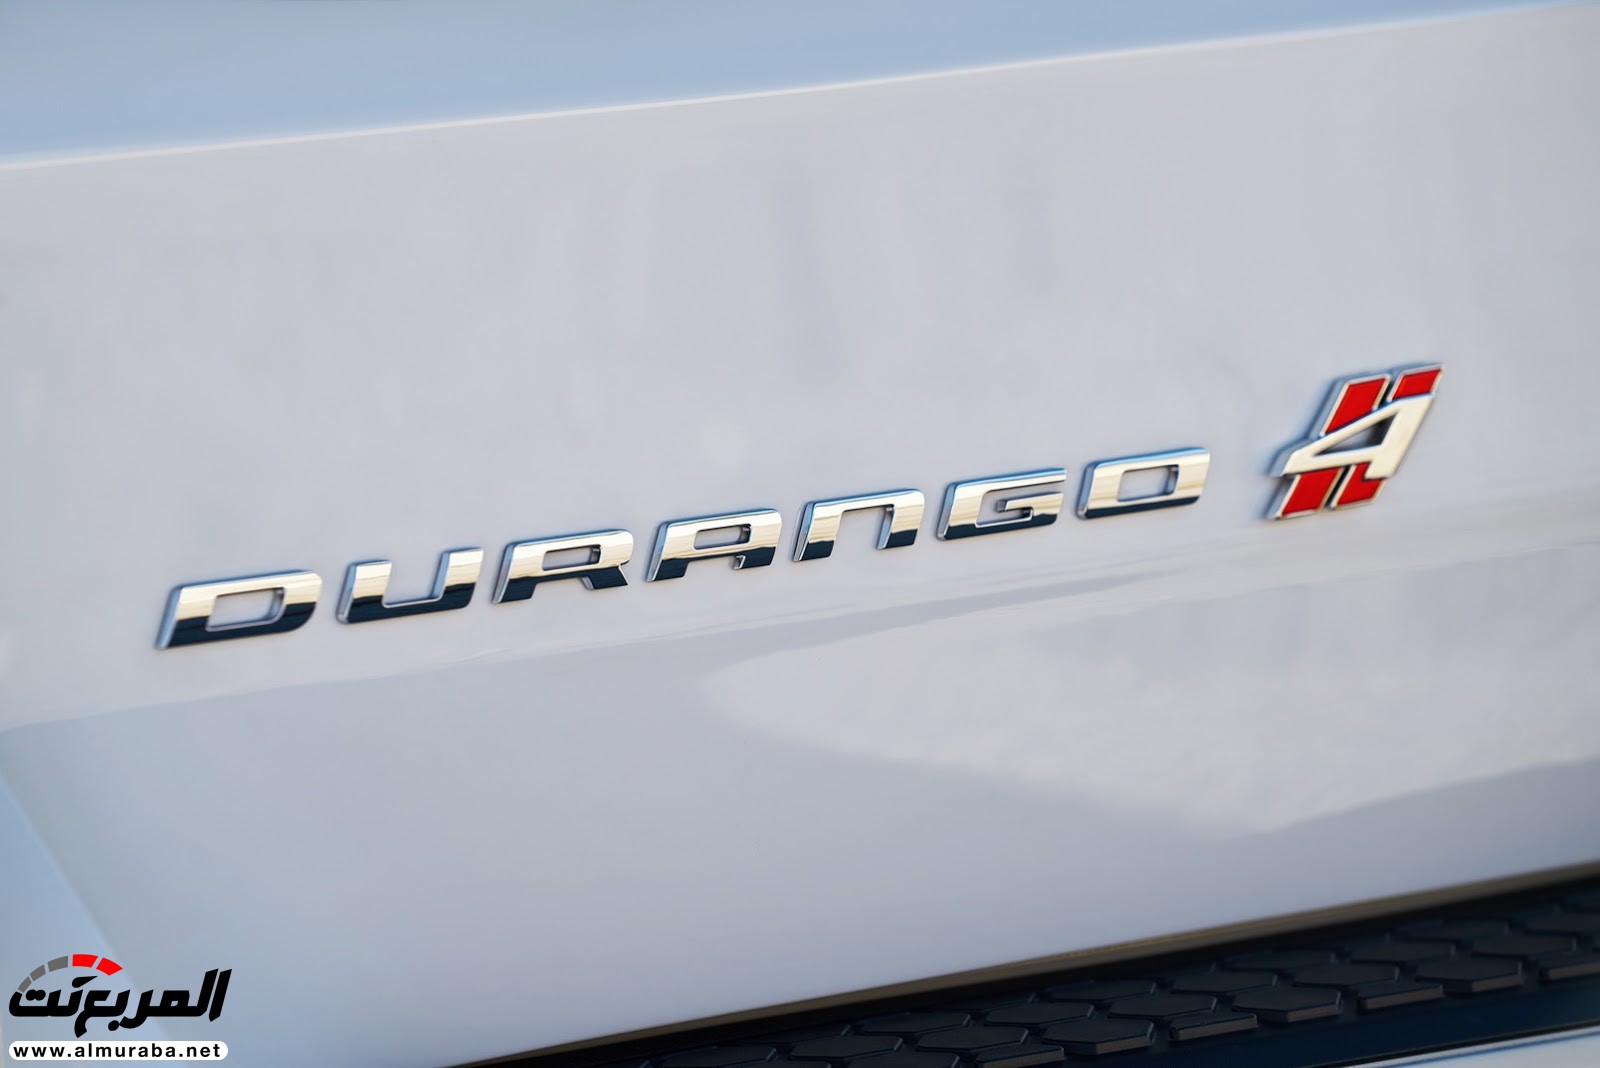 "دودج" دورانجو إس آر تي الجديدة كليا 2018 يكشف عنها بمحرك 475 حصان Dodge Durango SRT 34